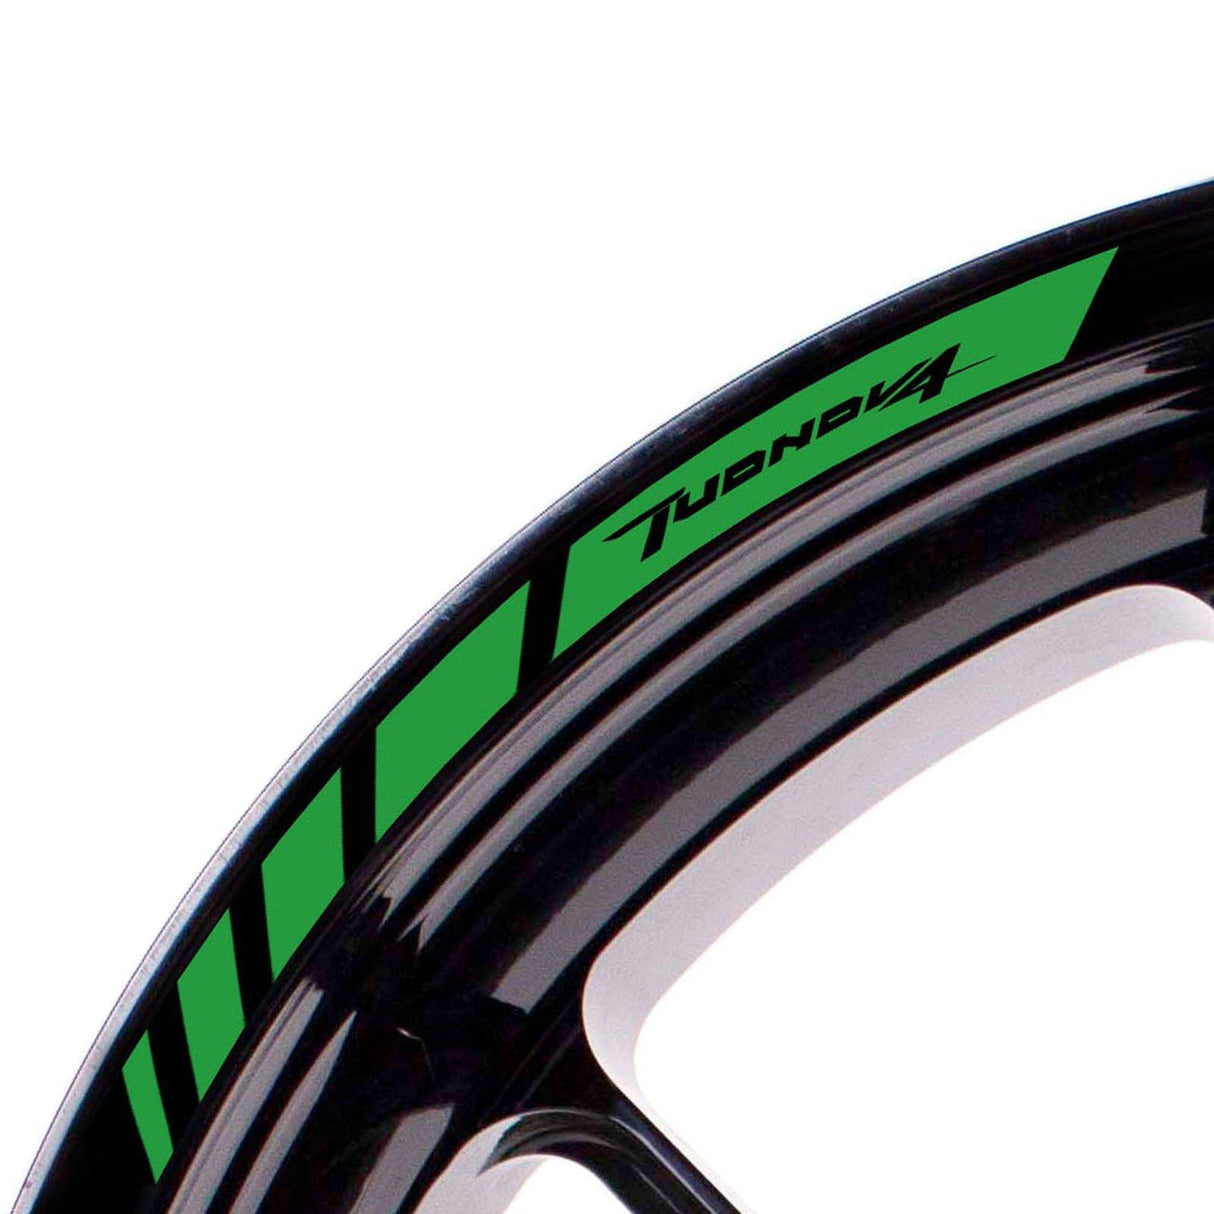 For Aprilia Tuono V4 Logo 17 inch Rim Wheel Stickers MM01B Rim Edge Tapes.